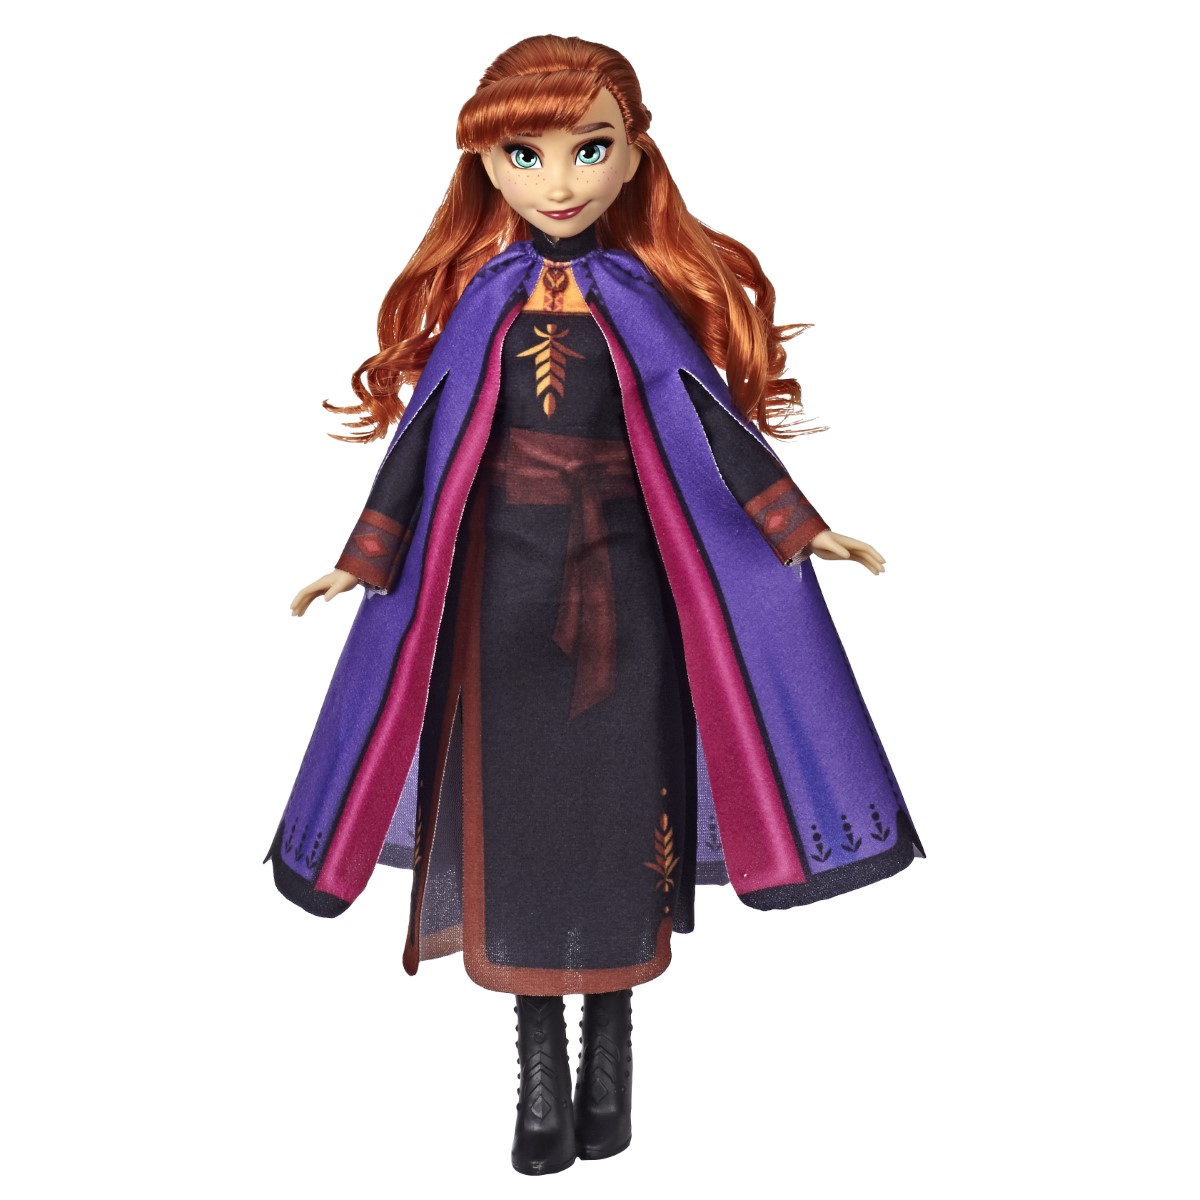 Hasbro Frozen 2 Opp Character Anna